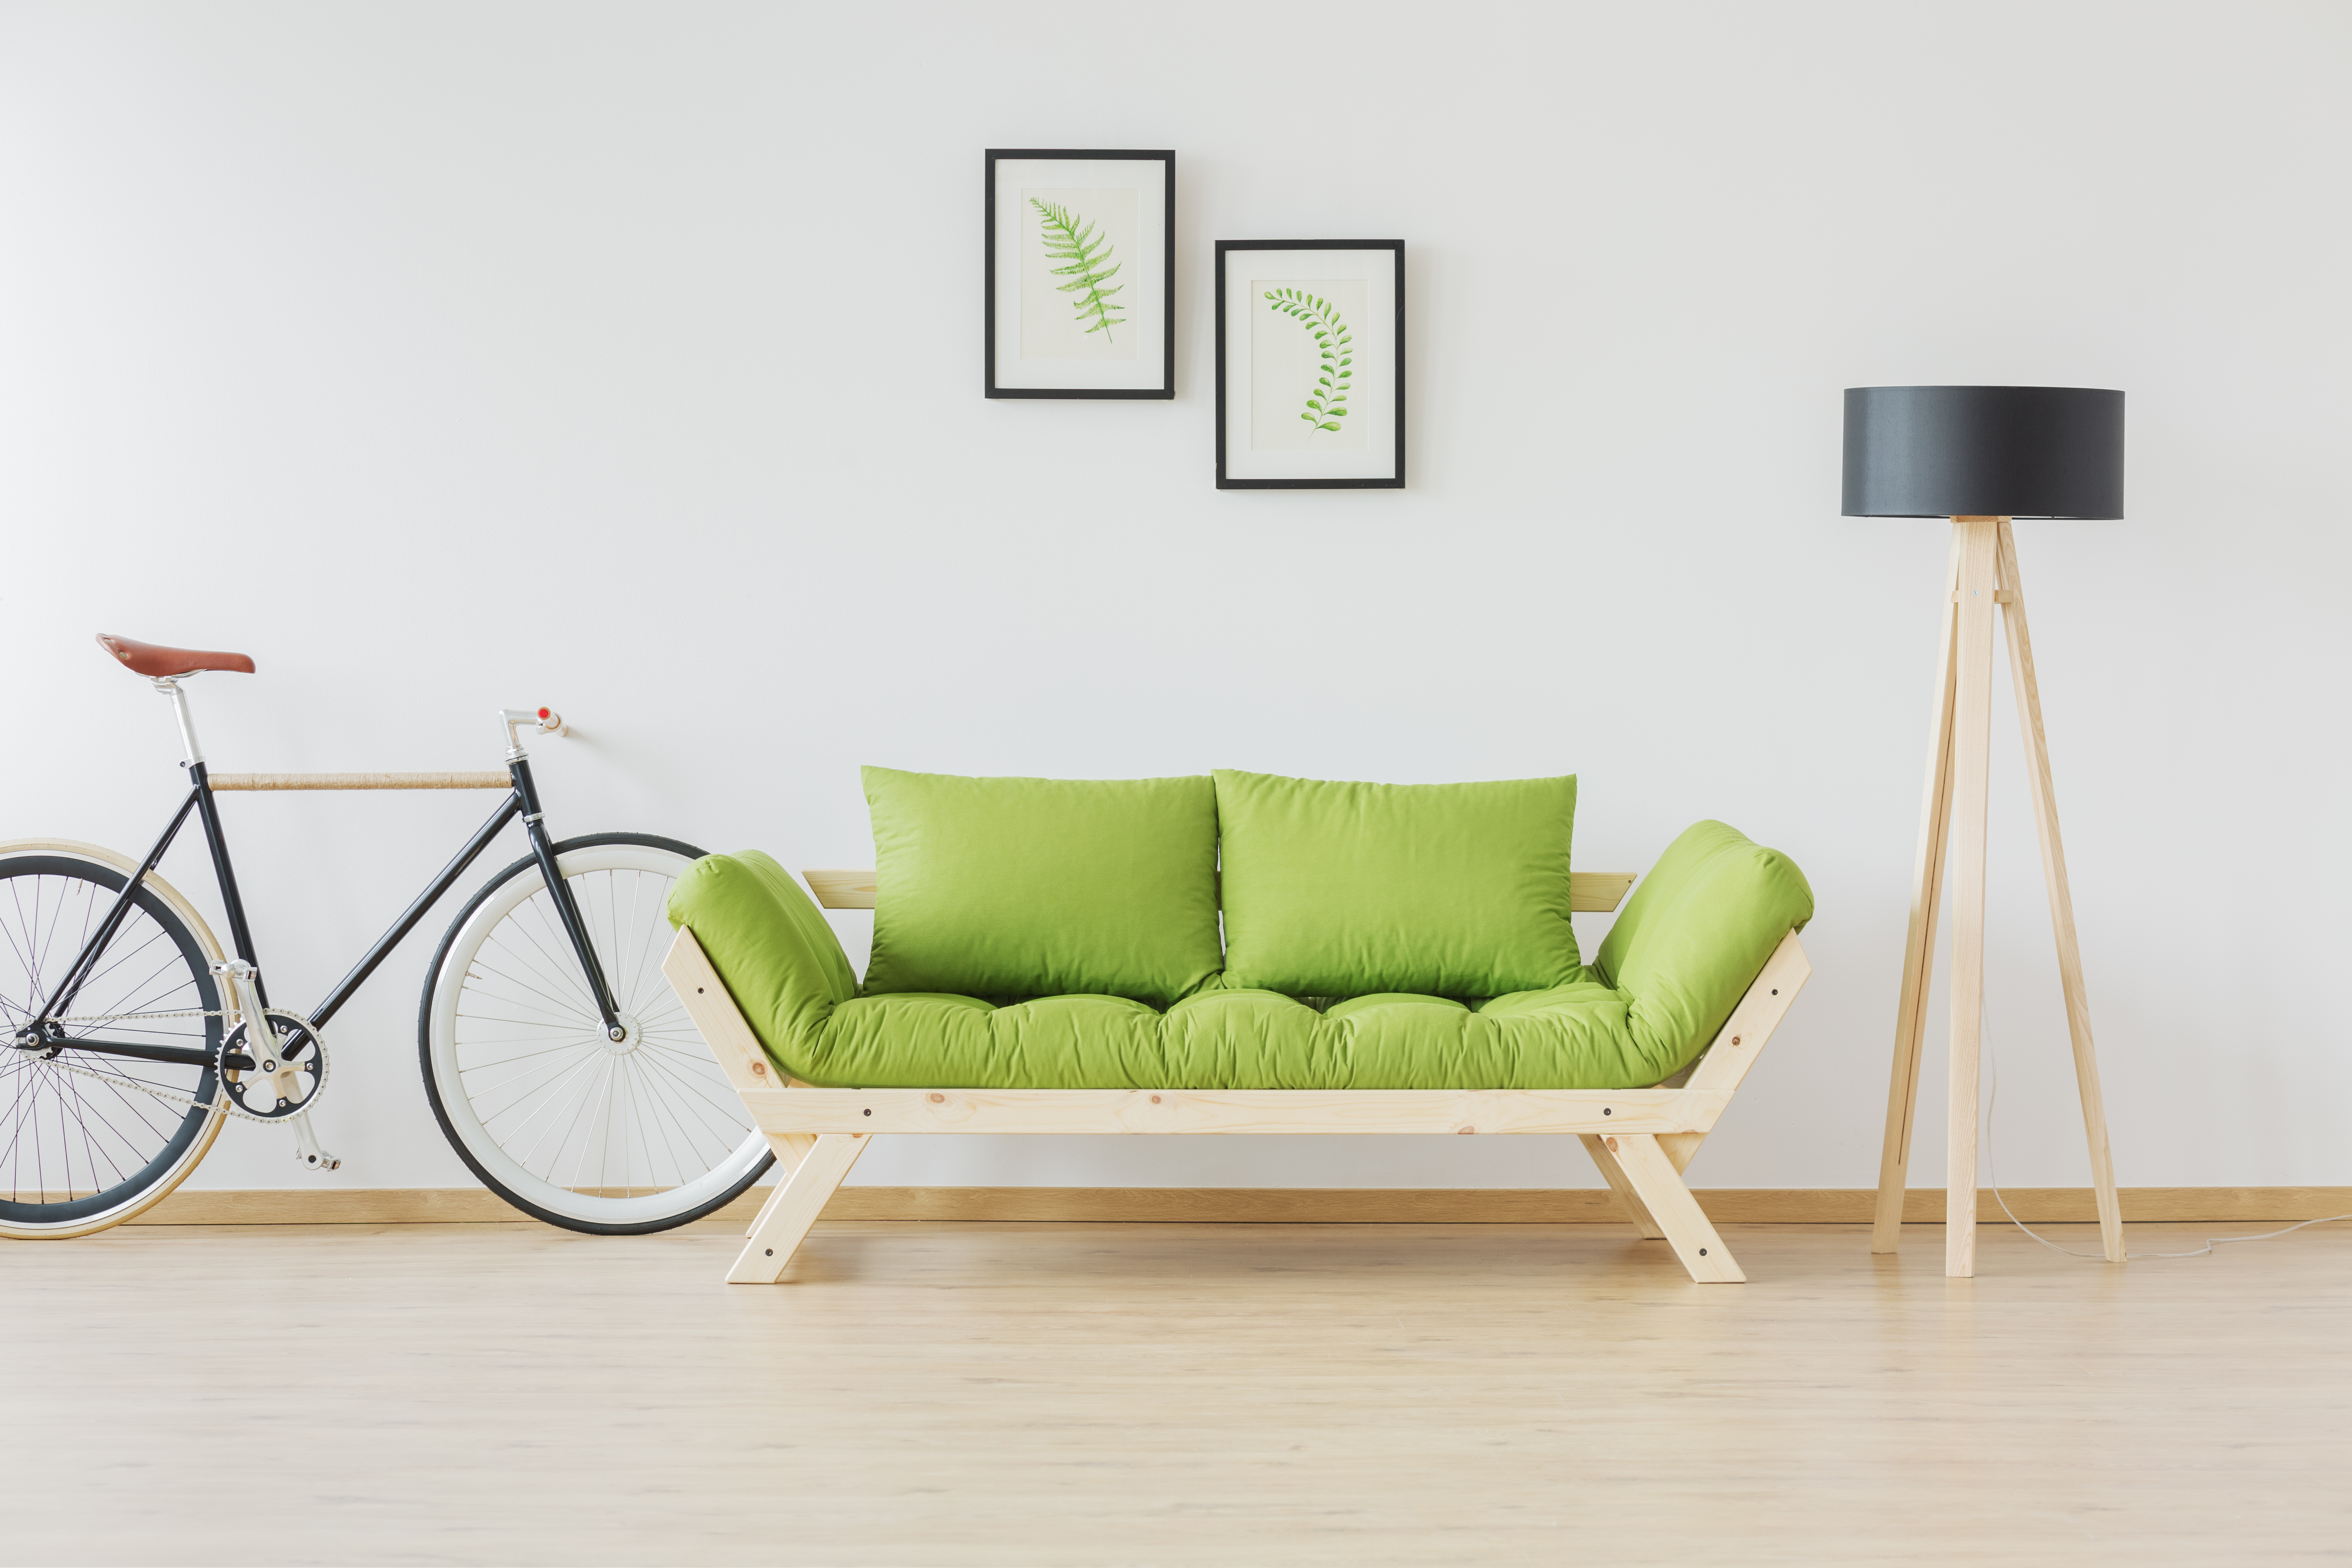 Muebles verdes resaltarán y aportarán vitalidad a una decoración de colores claros